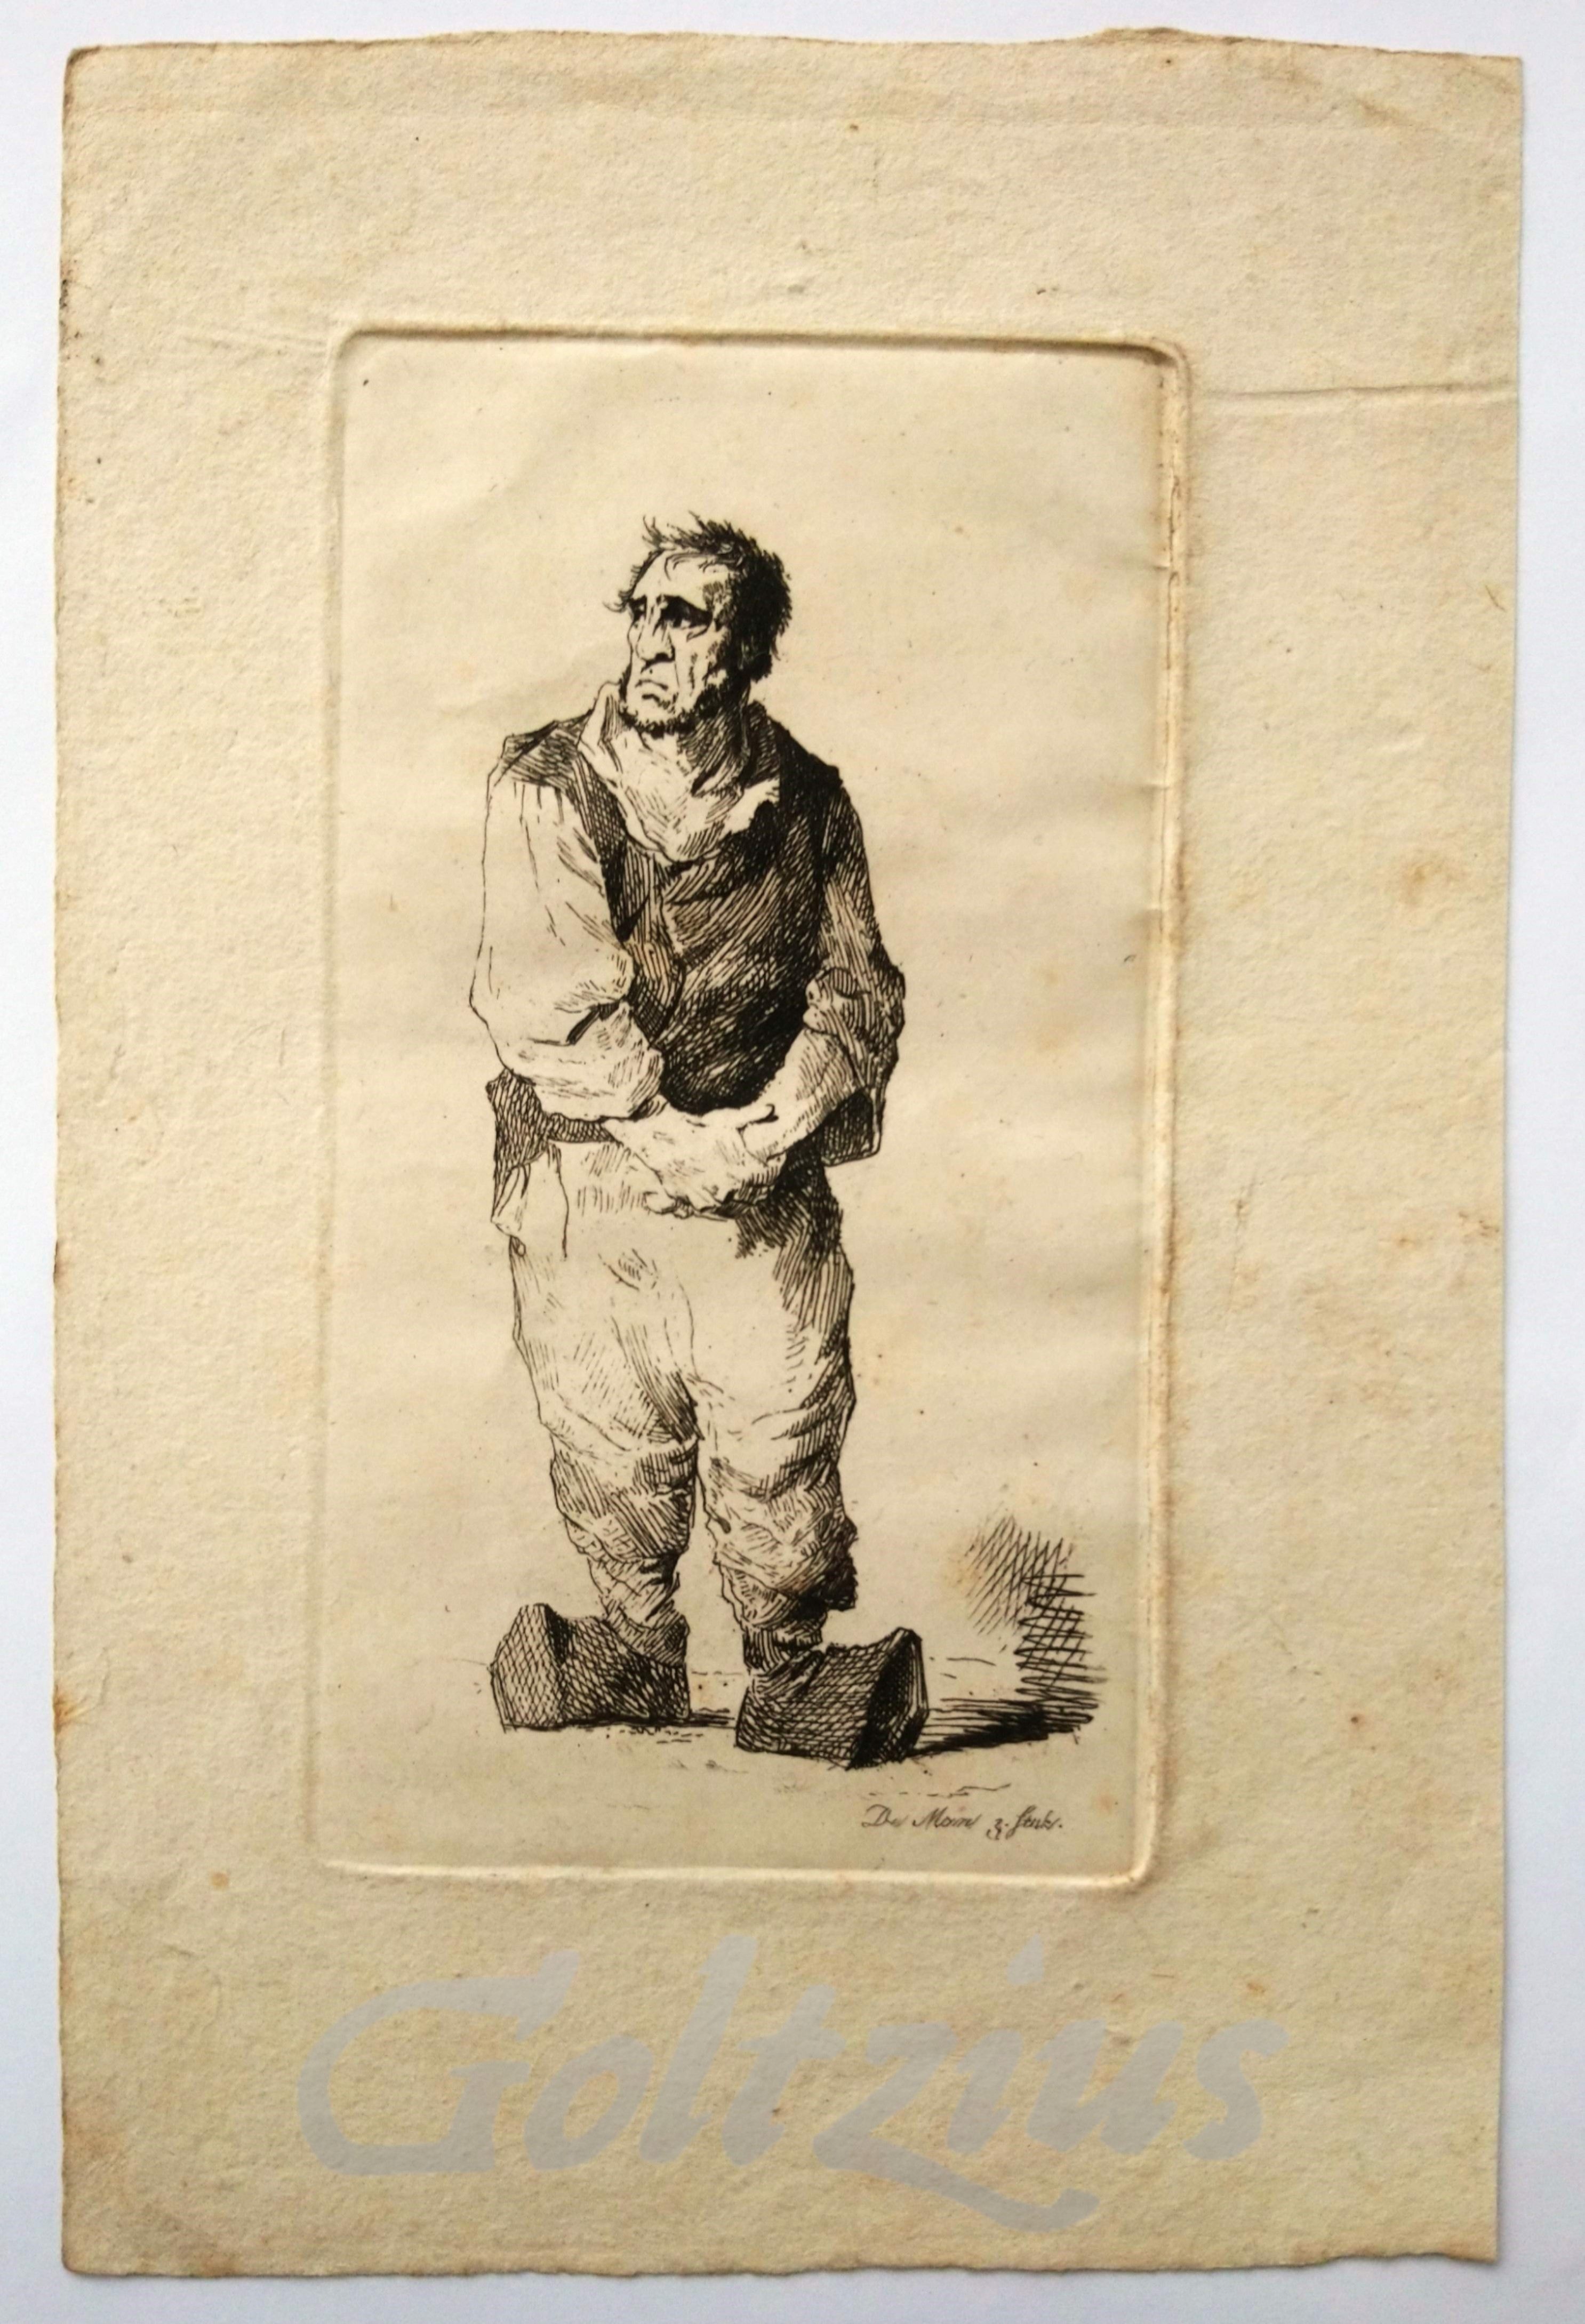 NOLTHENIUS DE MAN, ANTHONIE W.H., Farmer on clogs